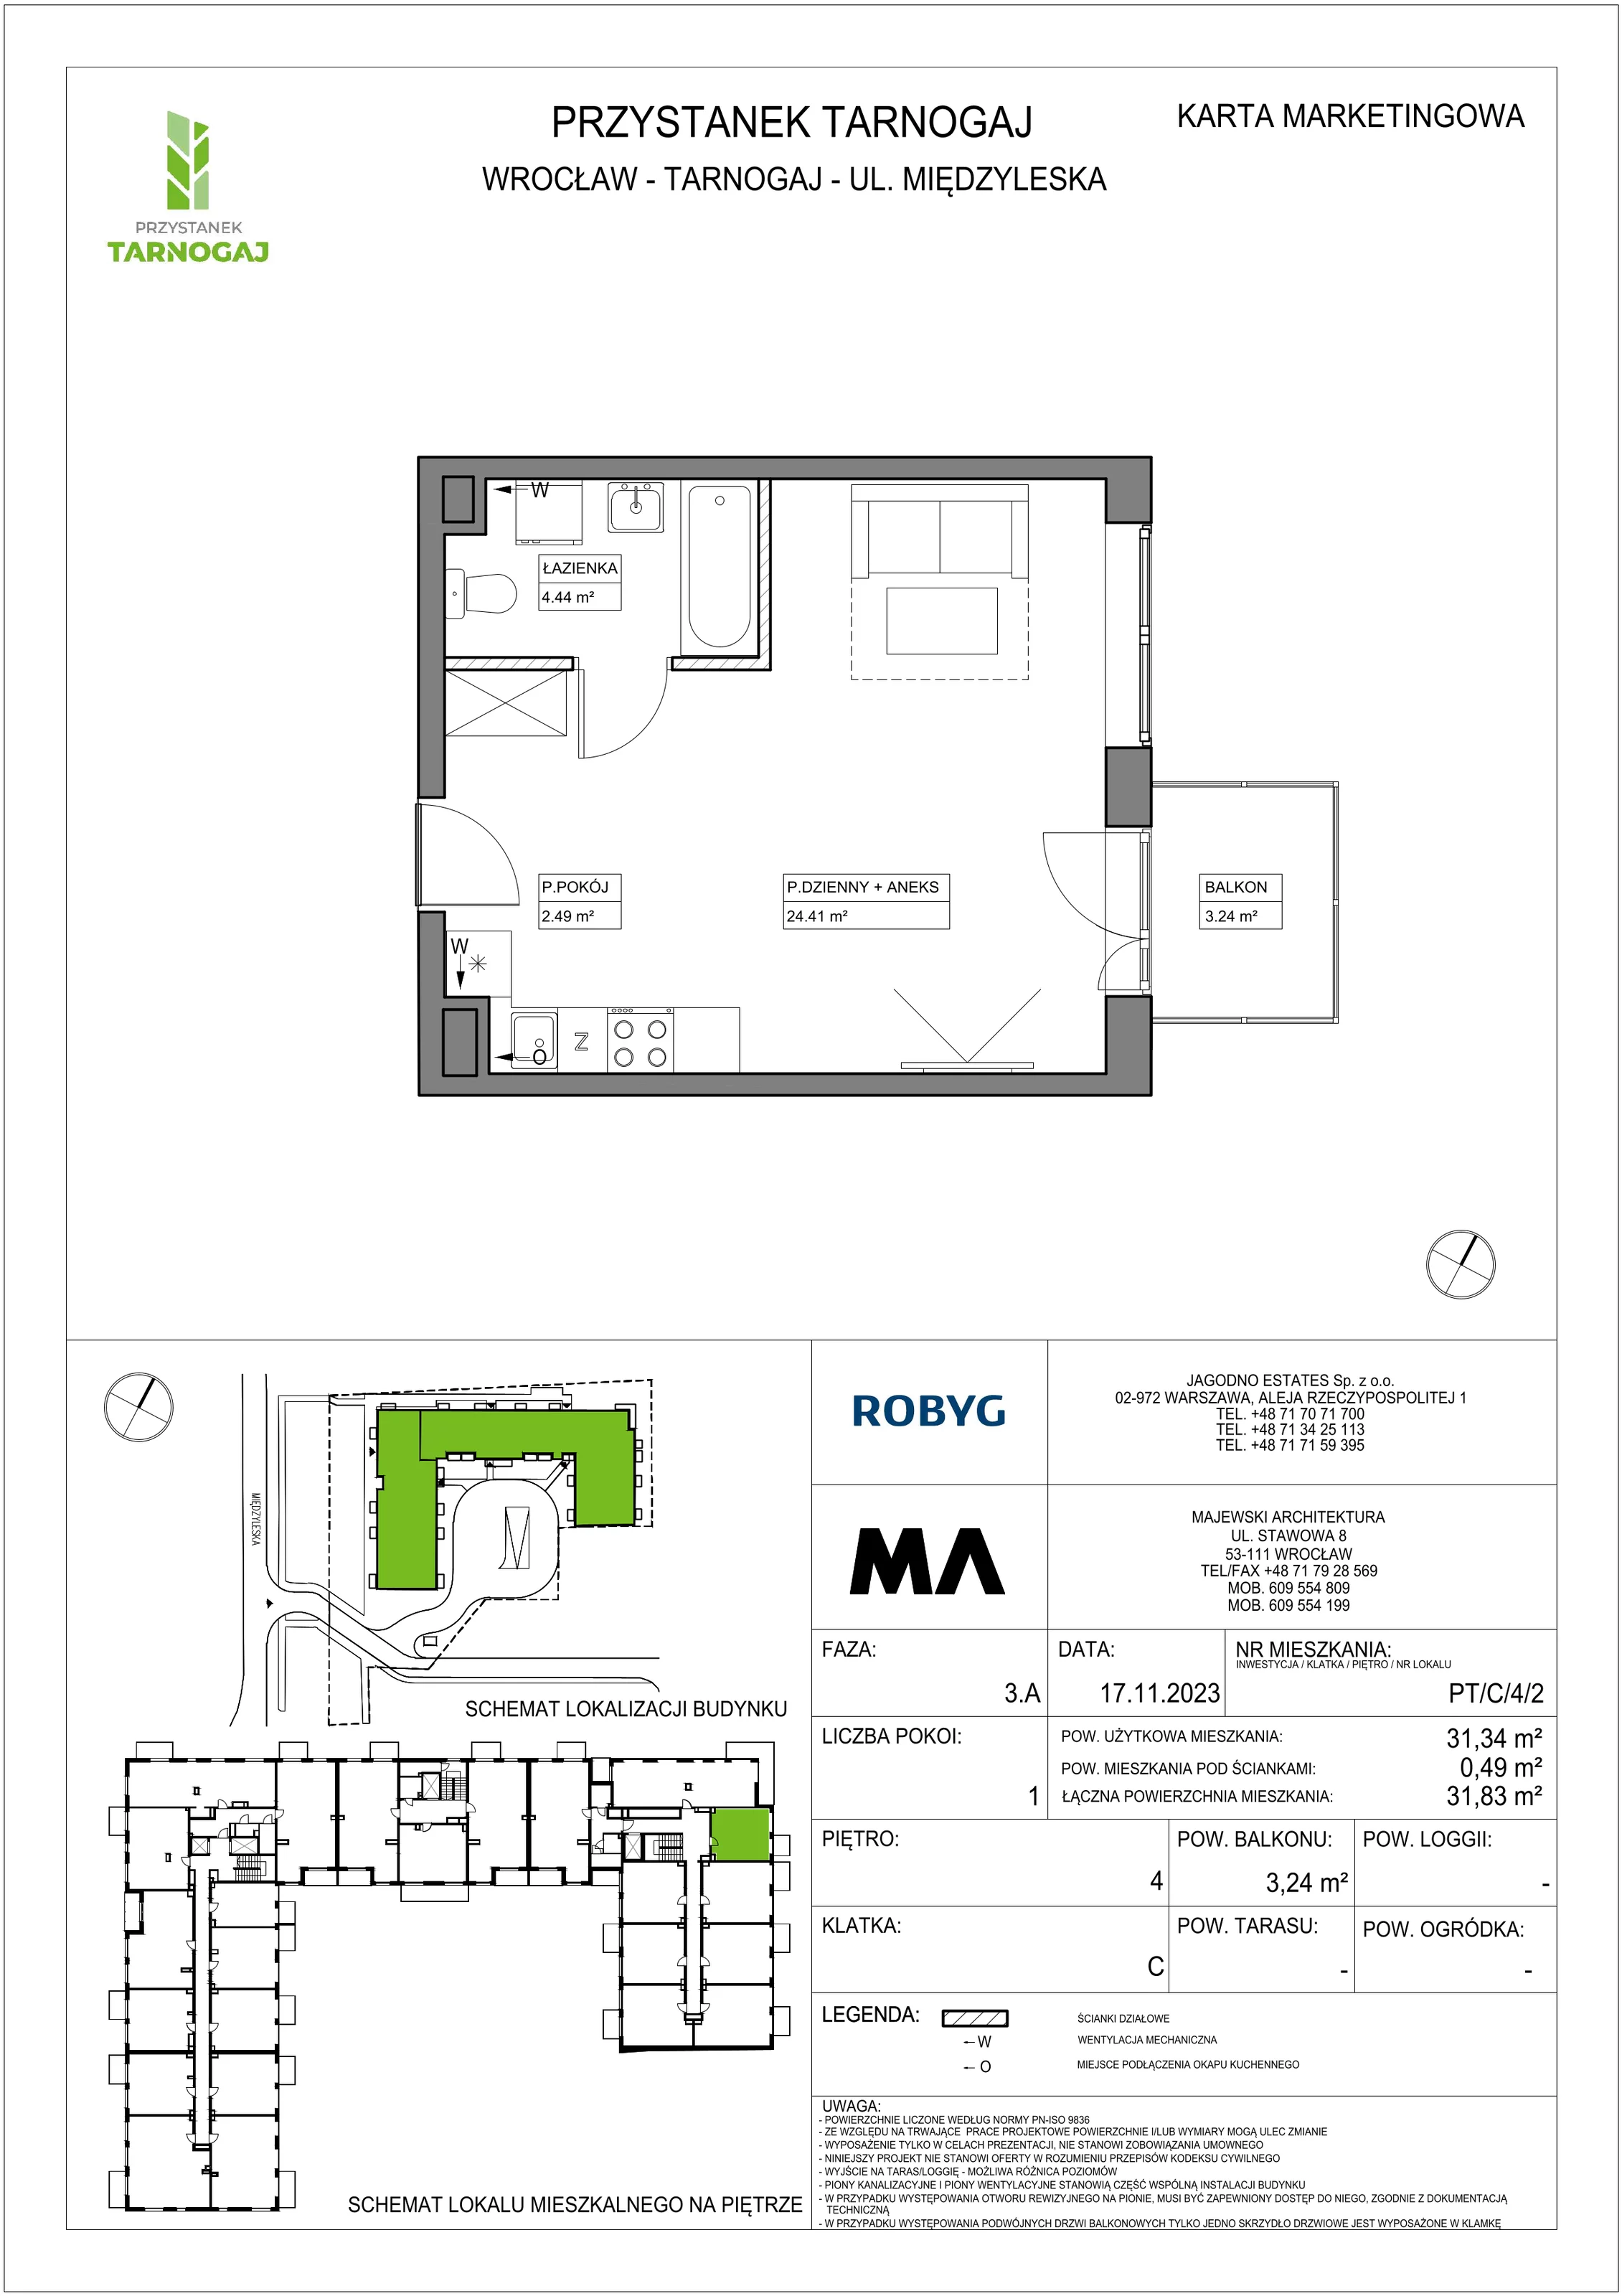 Mieszkanie 31,34 m², piętro 4, oferta nr PT/C/4/2, Przystanek Tarnogaj, Wrocław, Tarnogaj, Krzyki, ul. Międzyleska / Gazowa